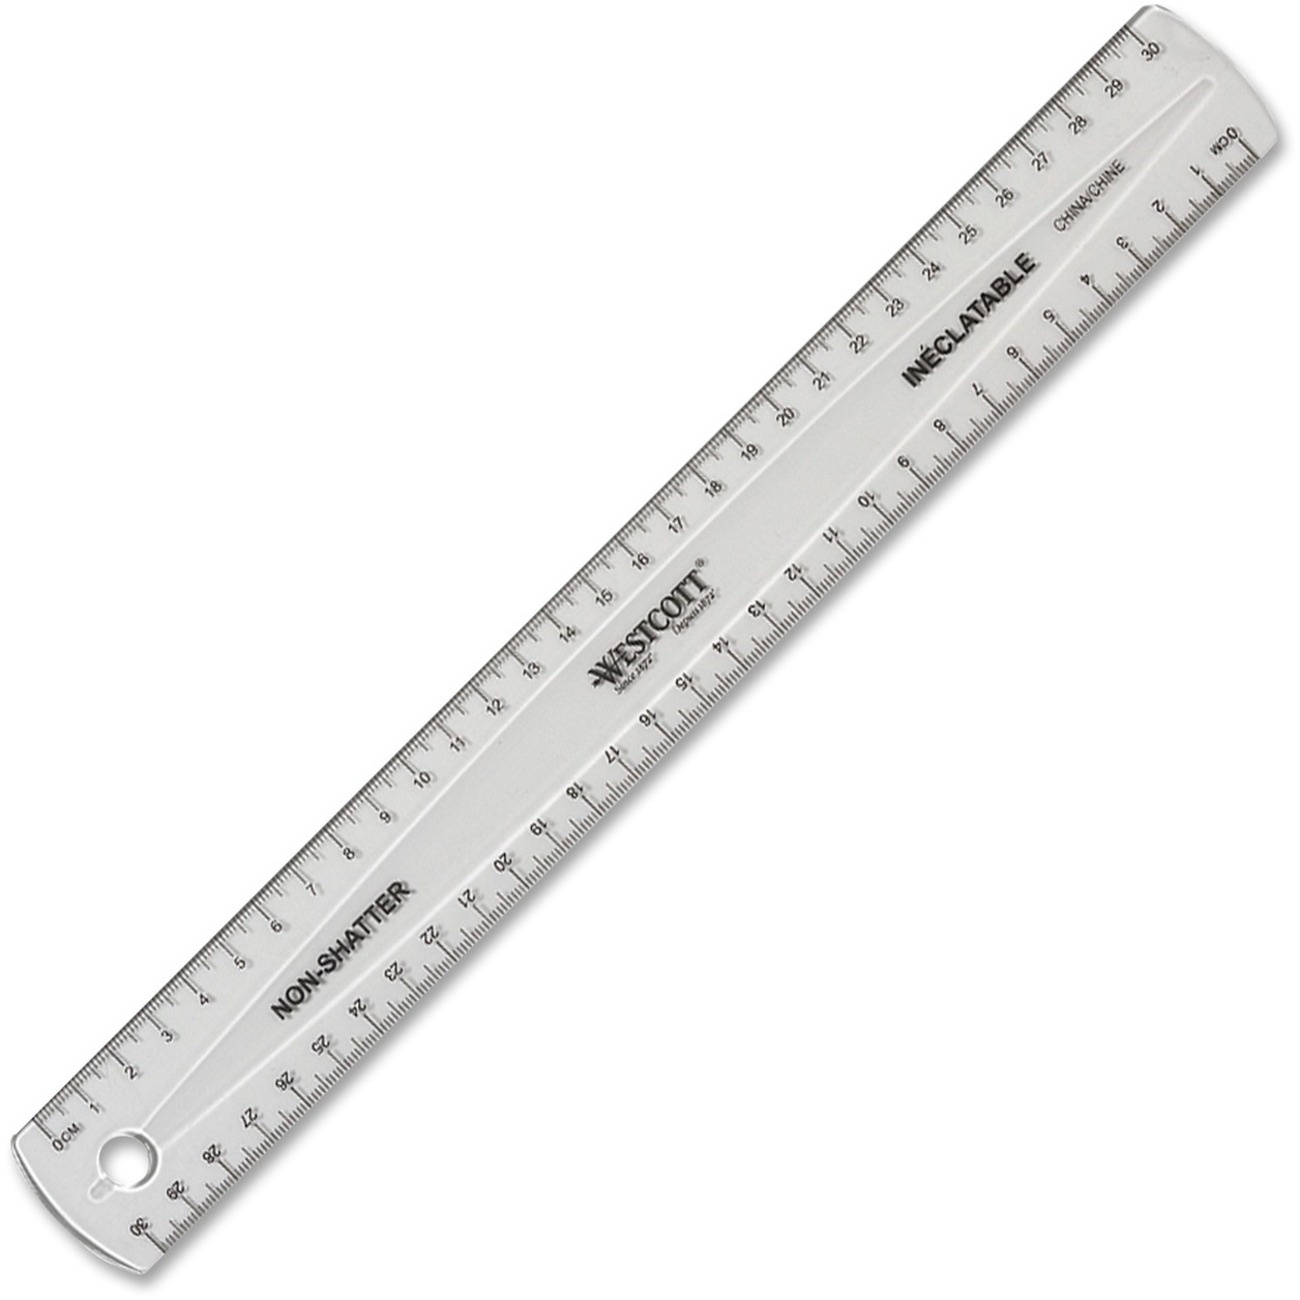 metric and standard ruler